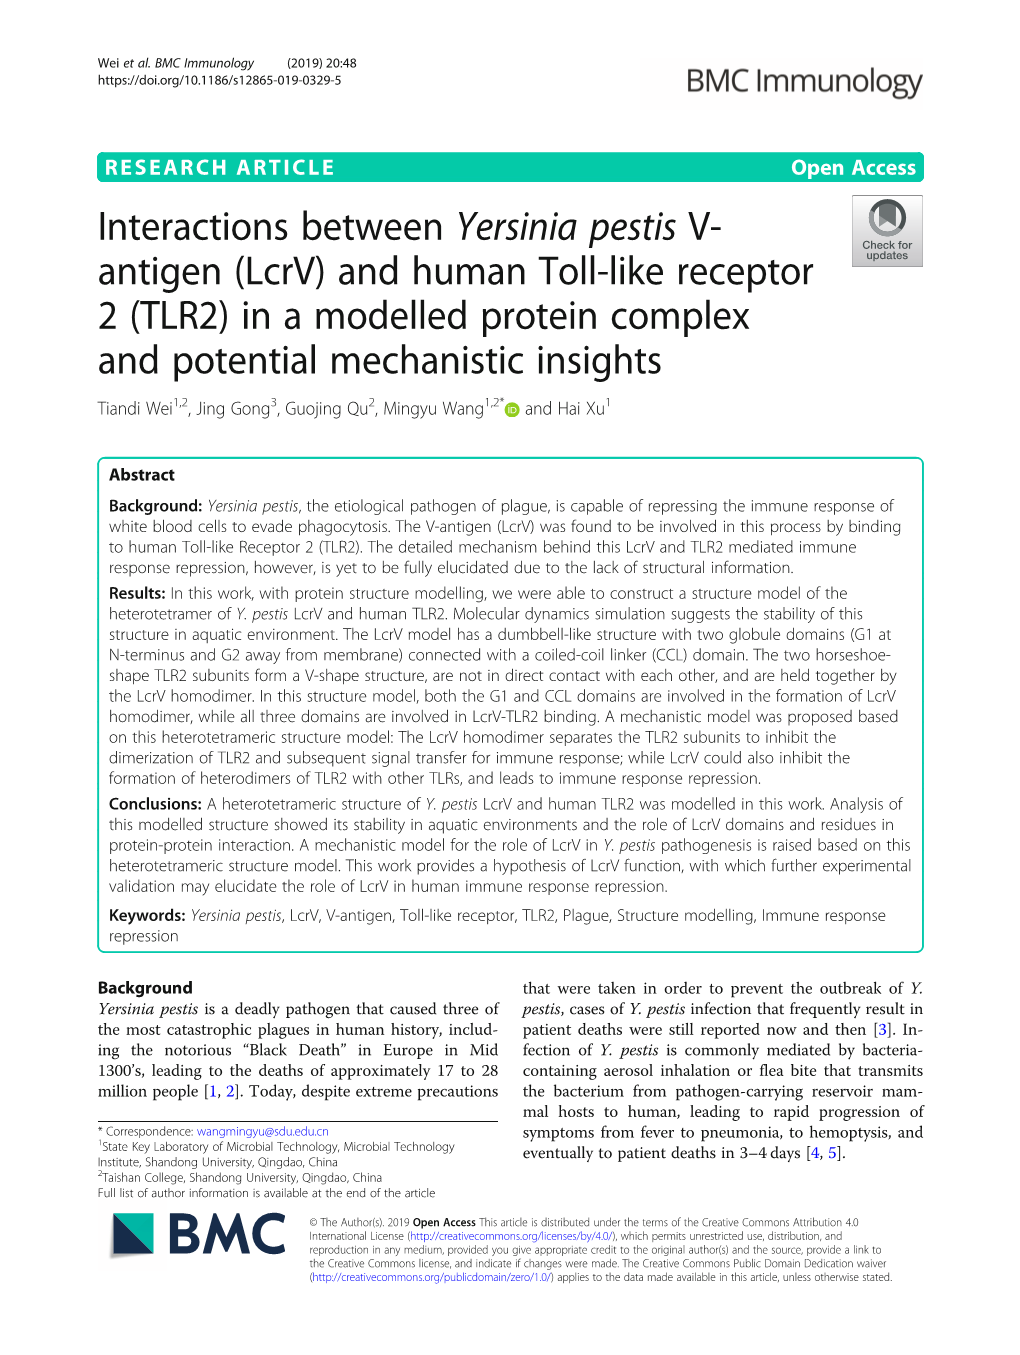 Interactions Between Yersinia Pestis V-Antigen (Lcrv) and Human Toll-Like